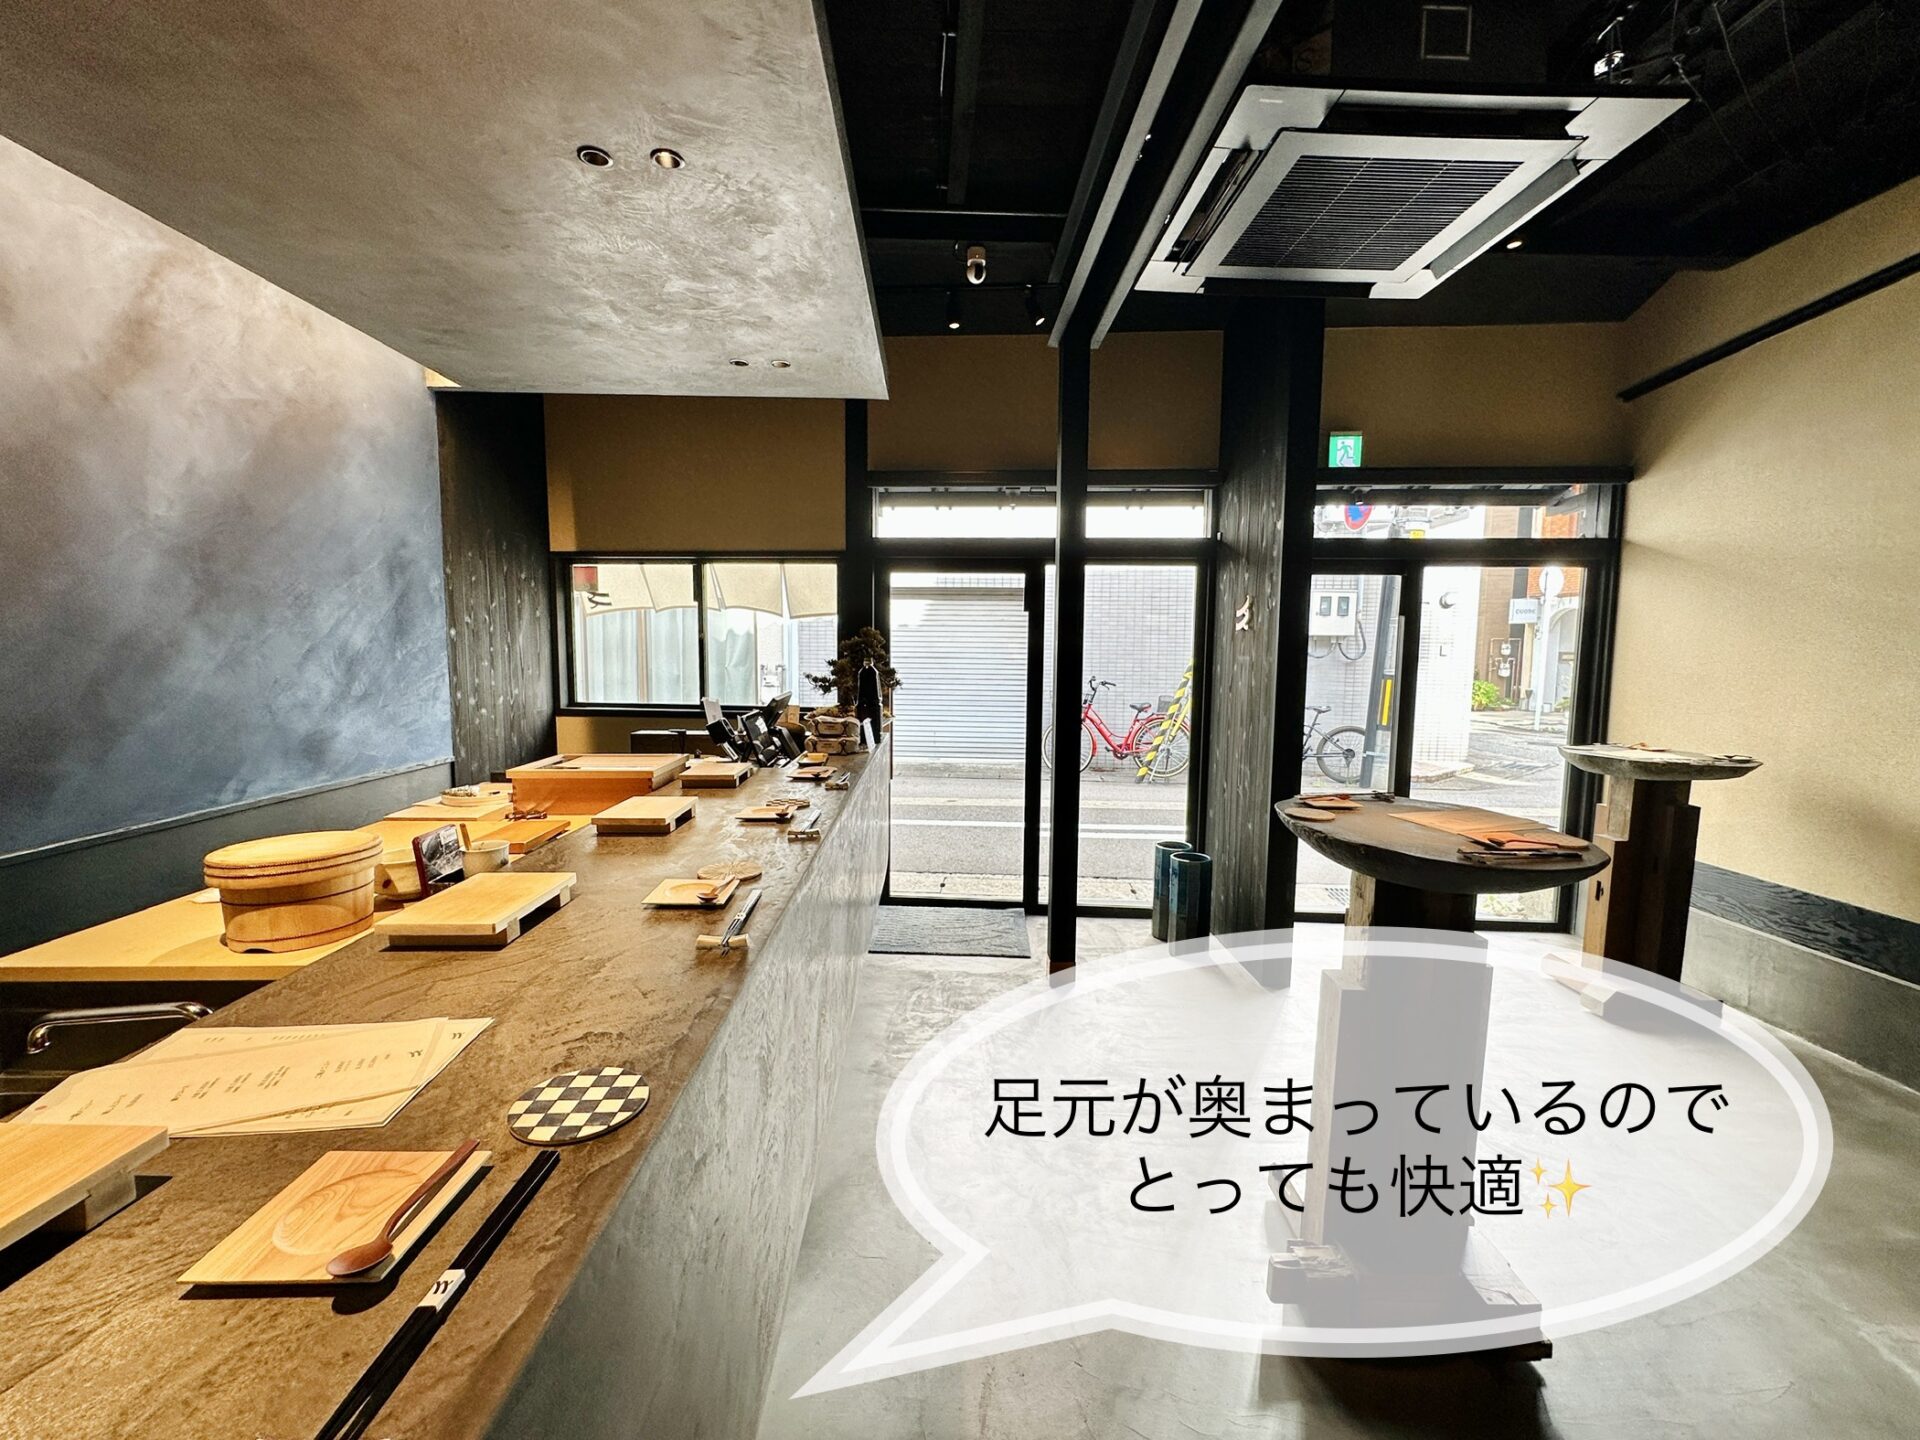 富山 寿司店「人人(じんじん)」ブログレビュー カウンター席